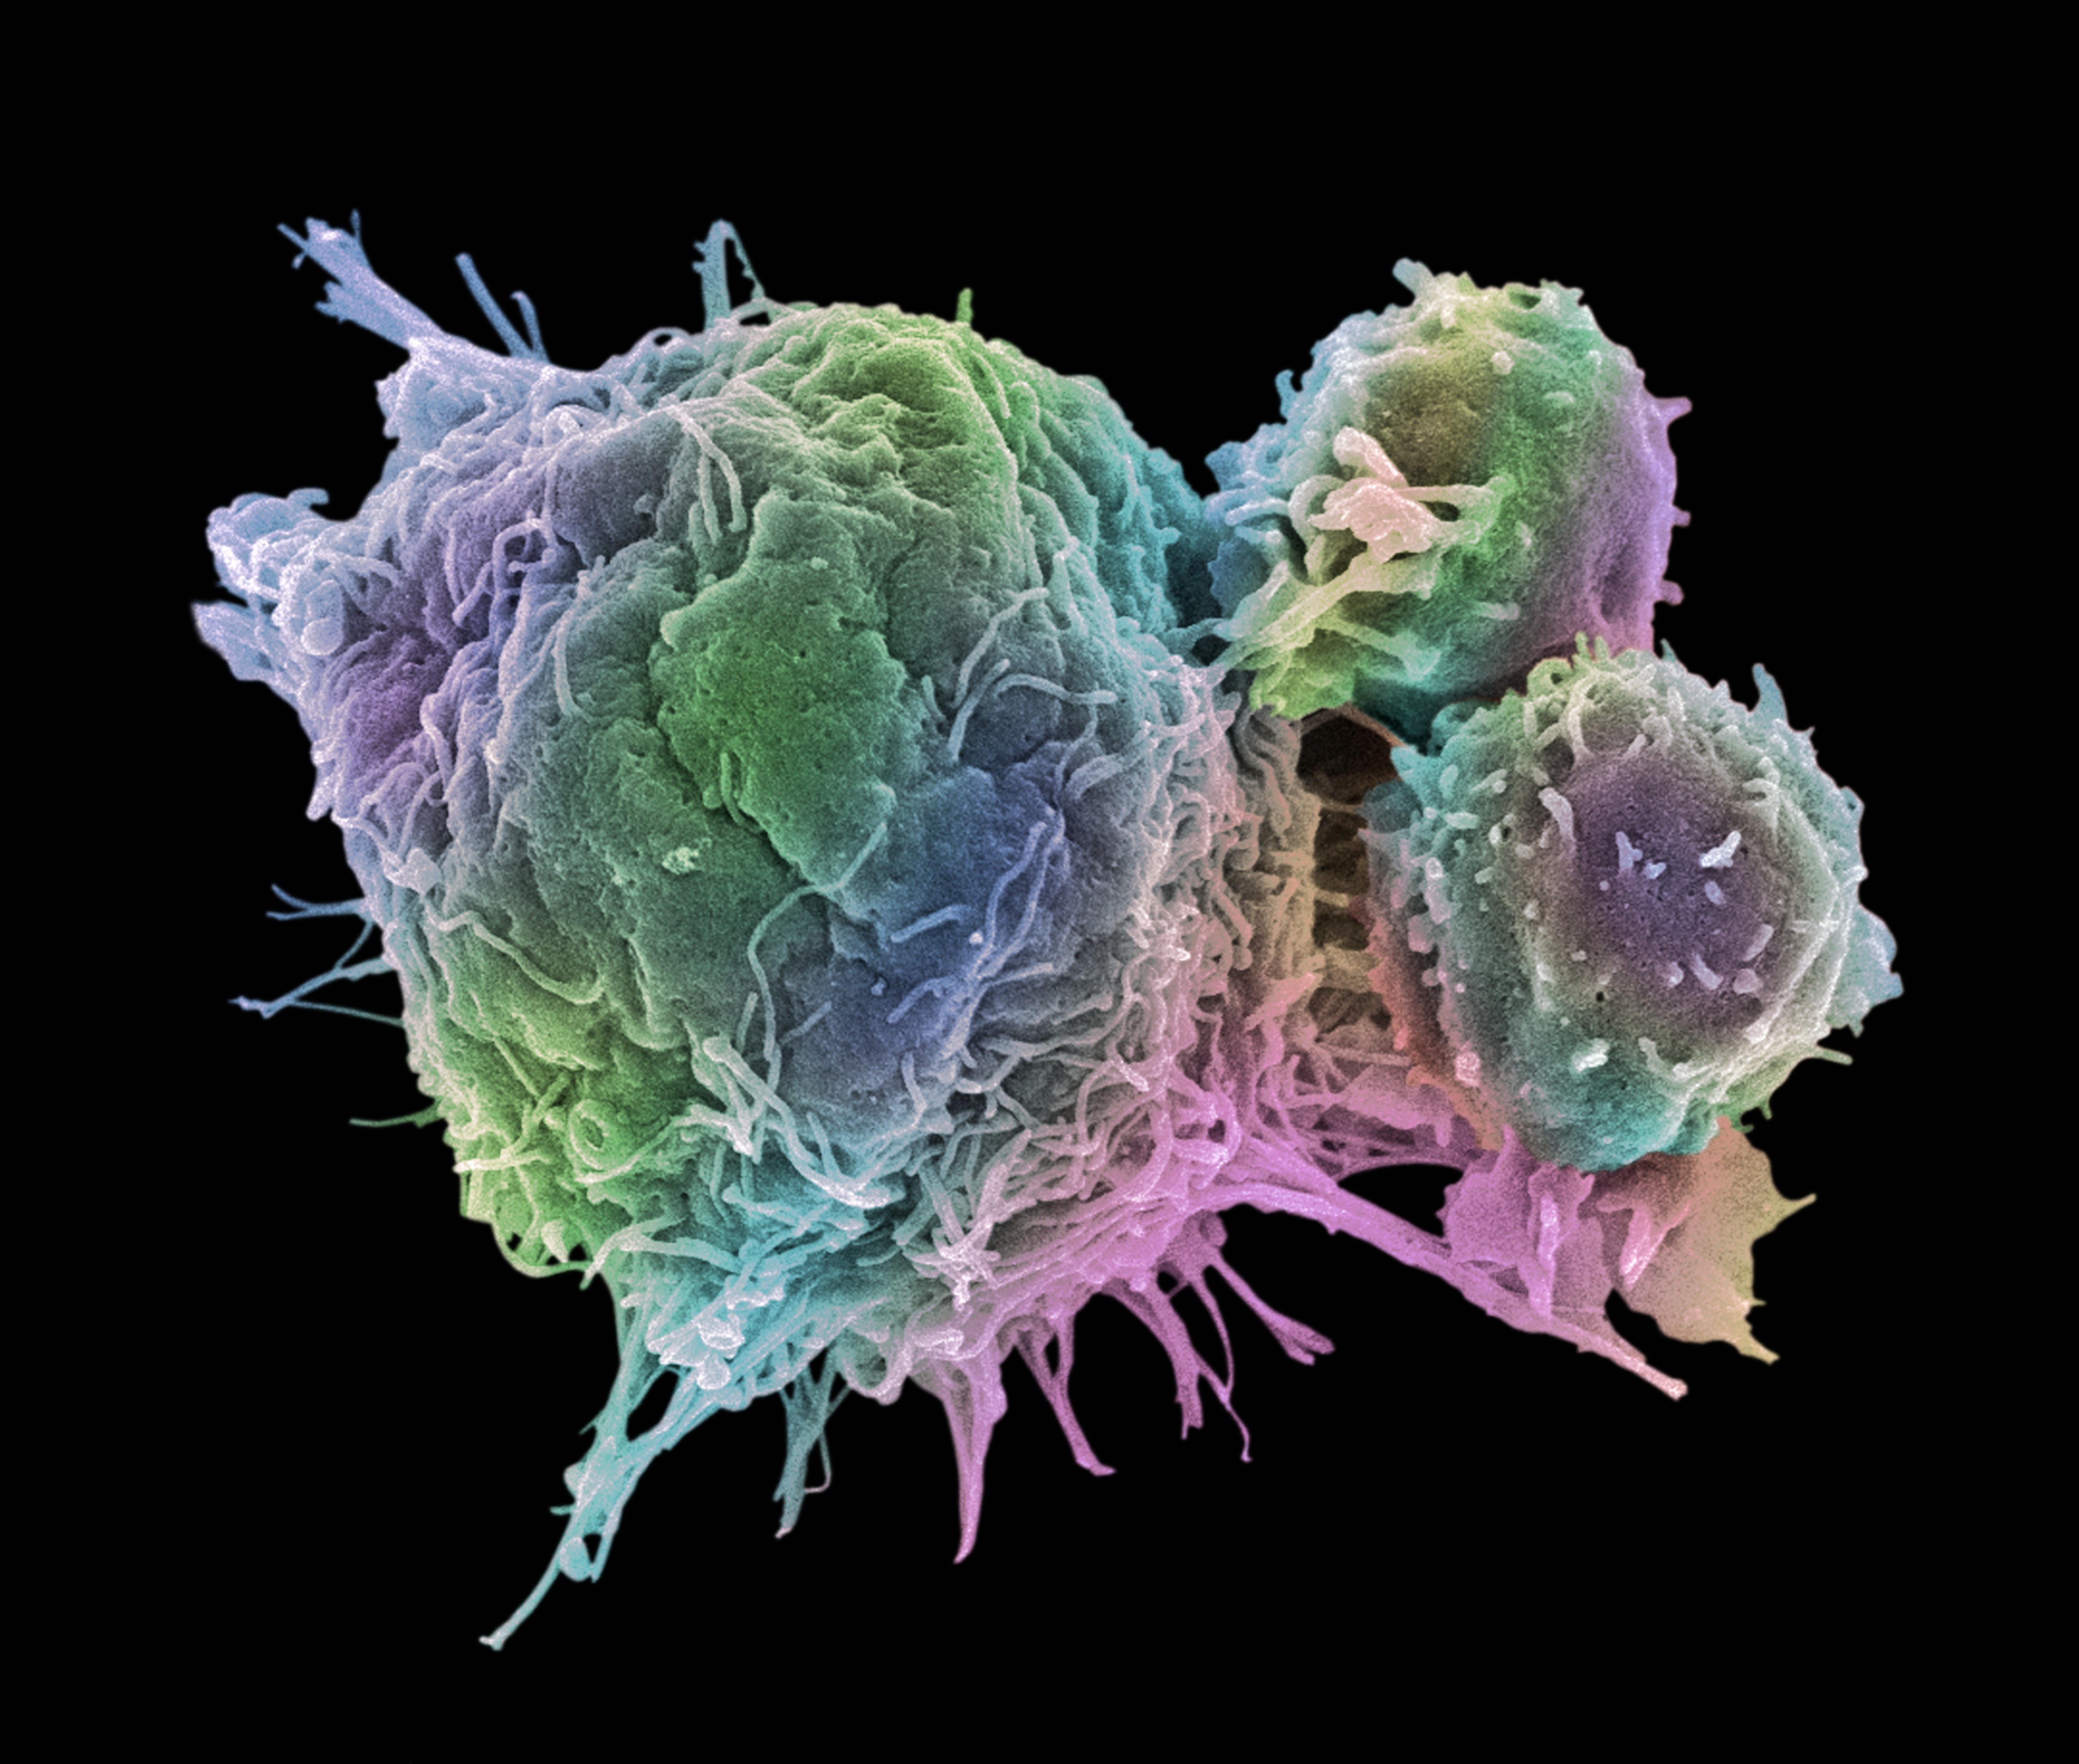 Megvan a mechanizmus, amellyel a felturbózott immunsejtek legyőzhetik a rákot